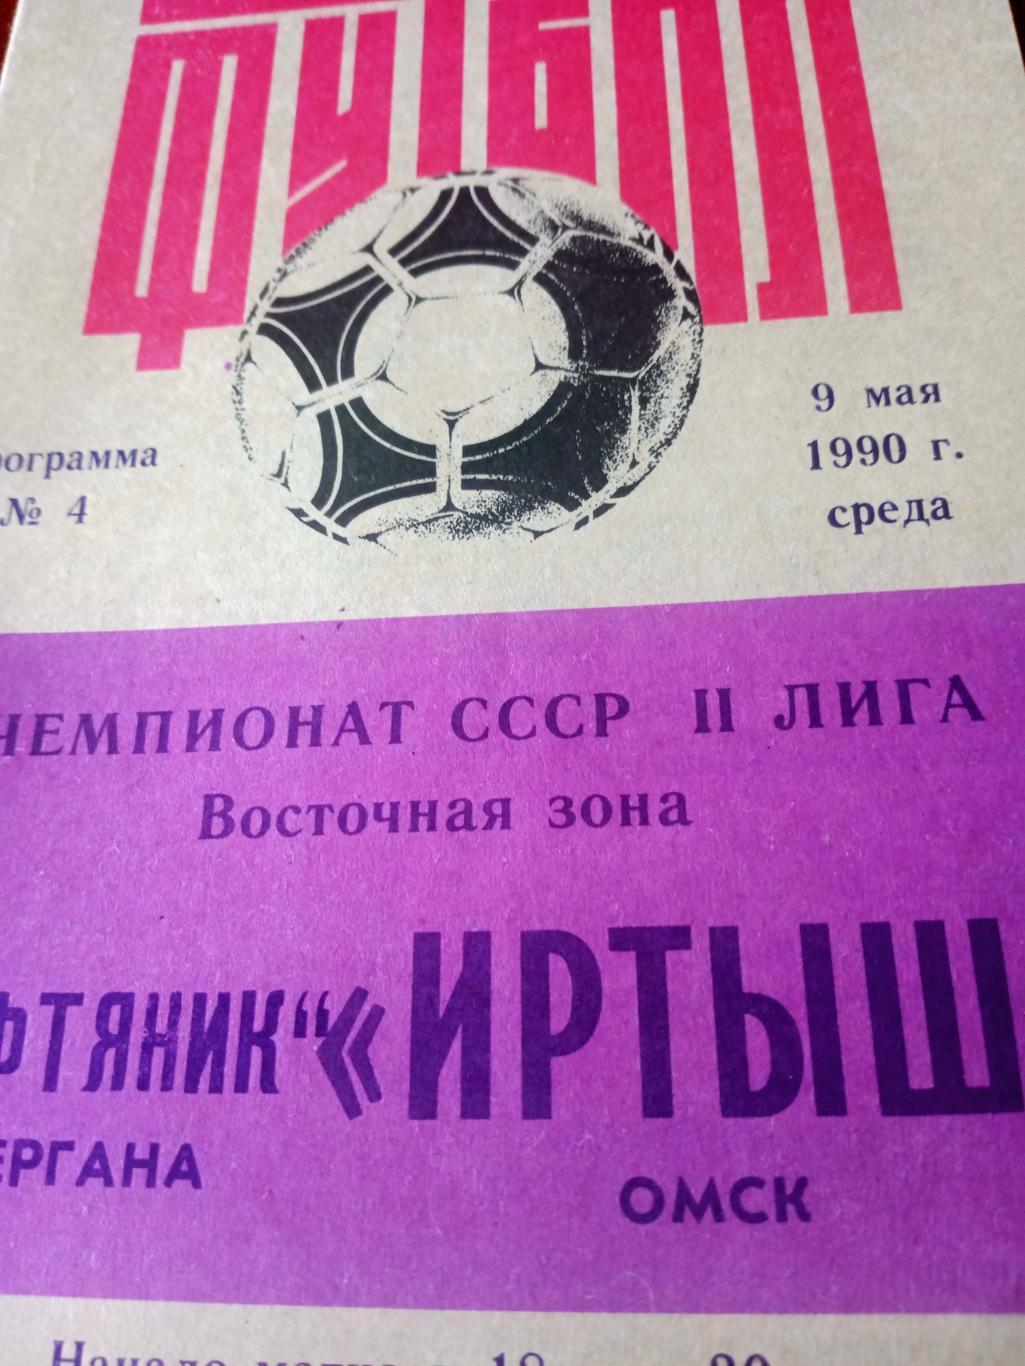 Иртыш Омск - Нефтяник Фергана. 9 мая 1990 г